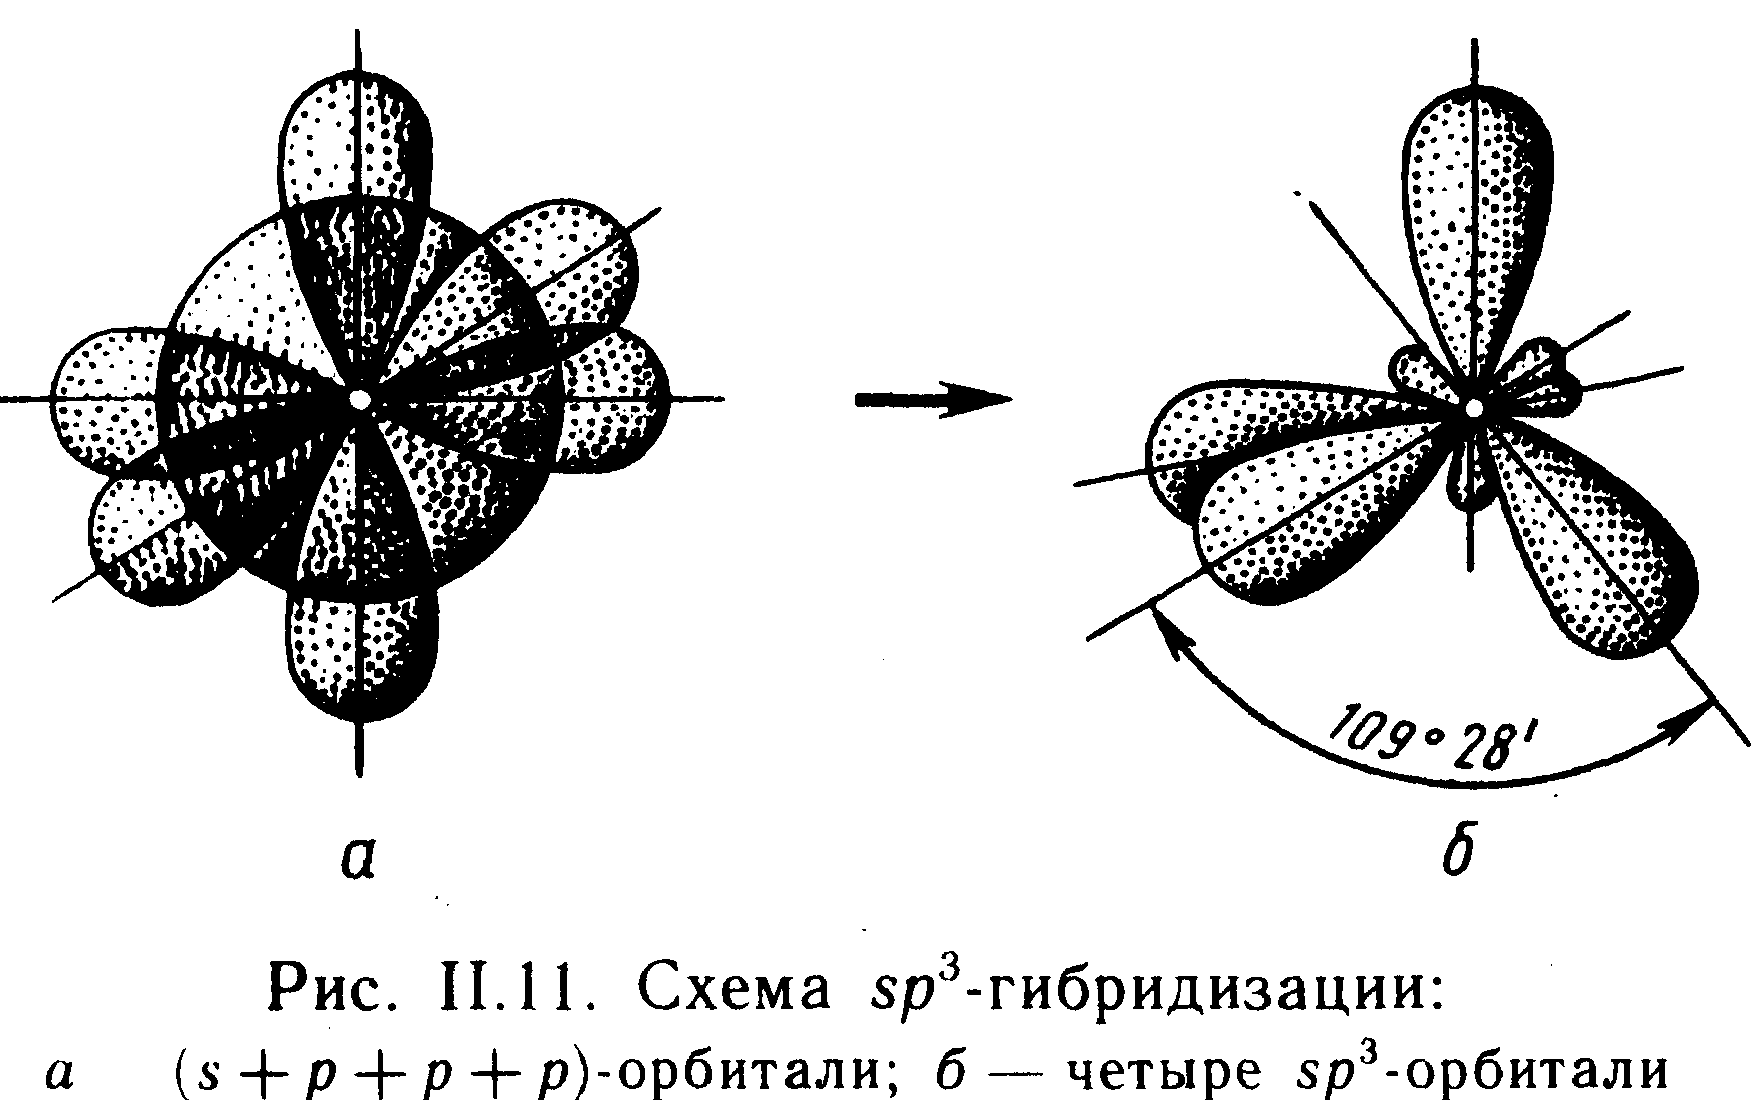 Стирол гибридизация атома. Гибридизация орбиталей (SP-, sp2 -, sp3 -). Схема перекрывания атомных орбиталей co2. Гибридизация валентных орбиталей. Sp3 гибридизация углерода.